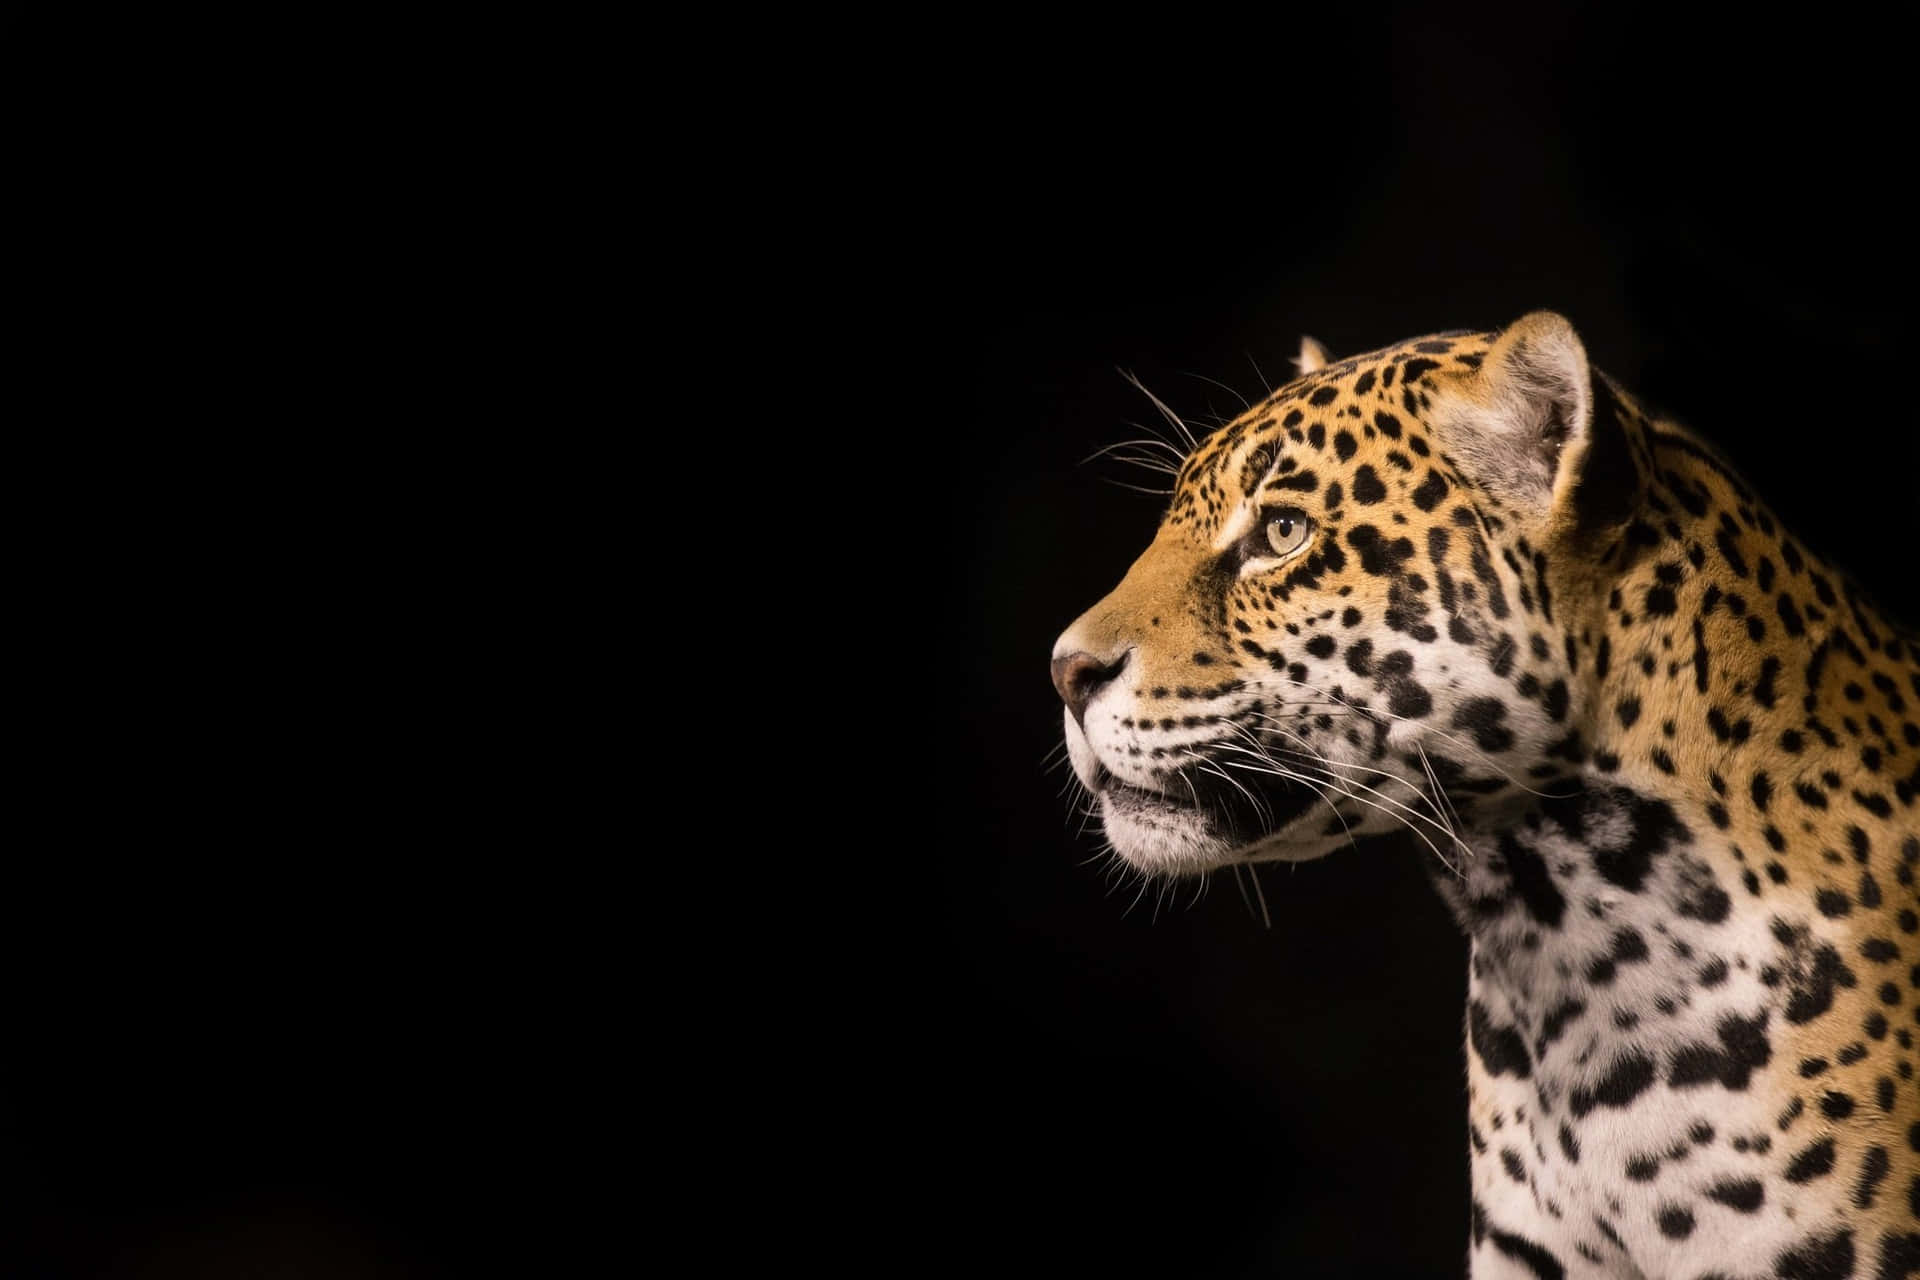 Dieeleganz Und Kraft Des Jaguars